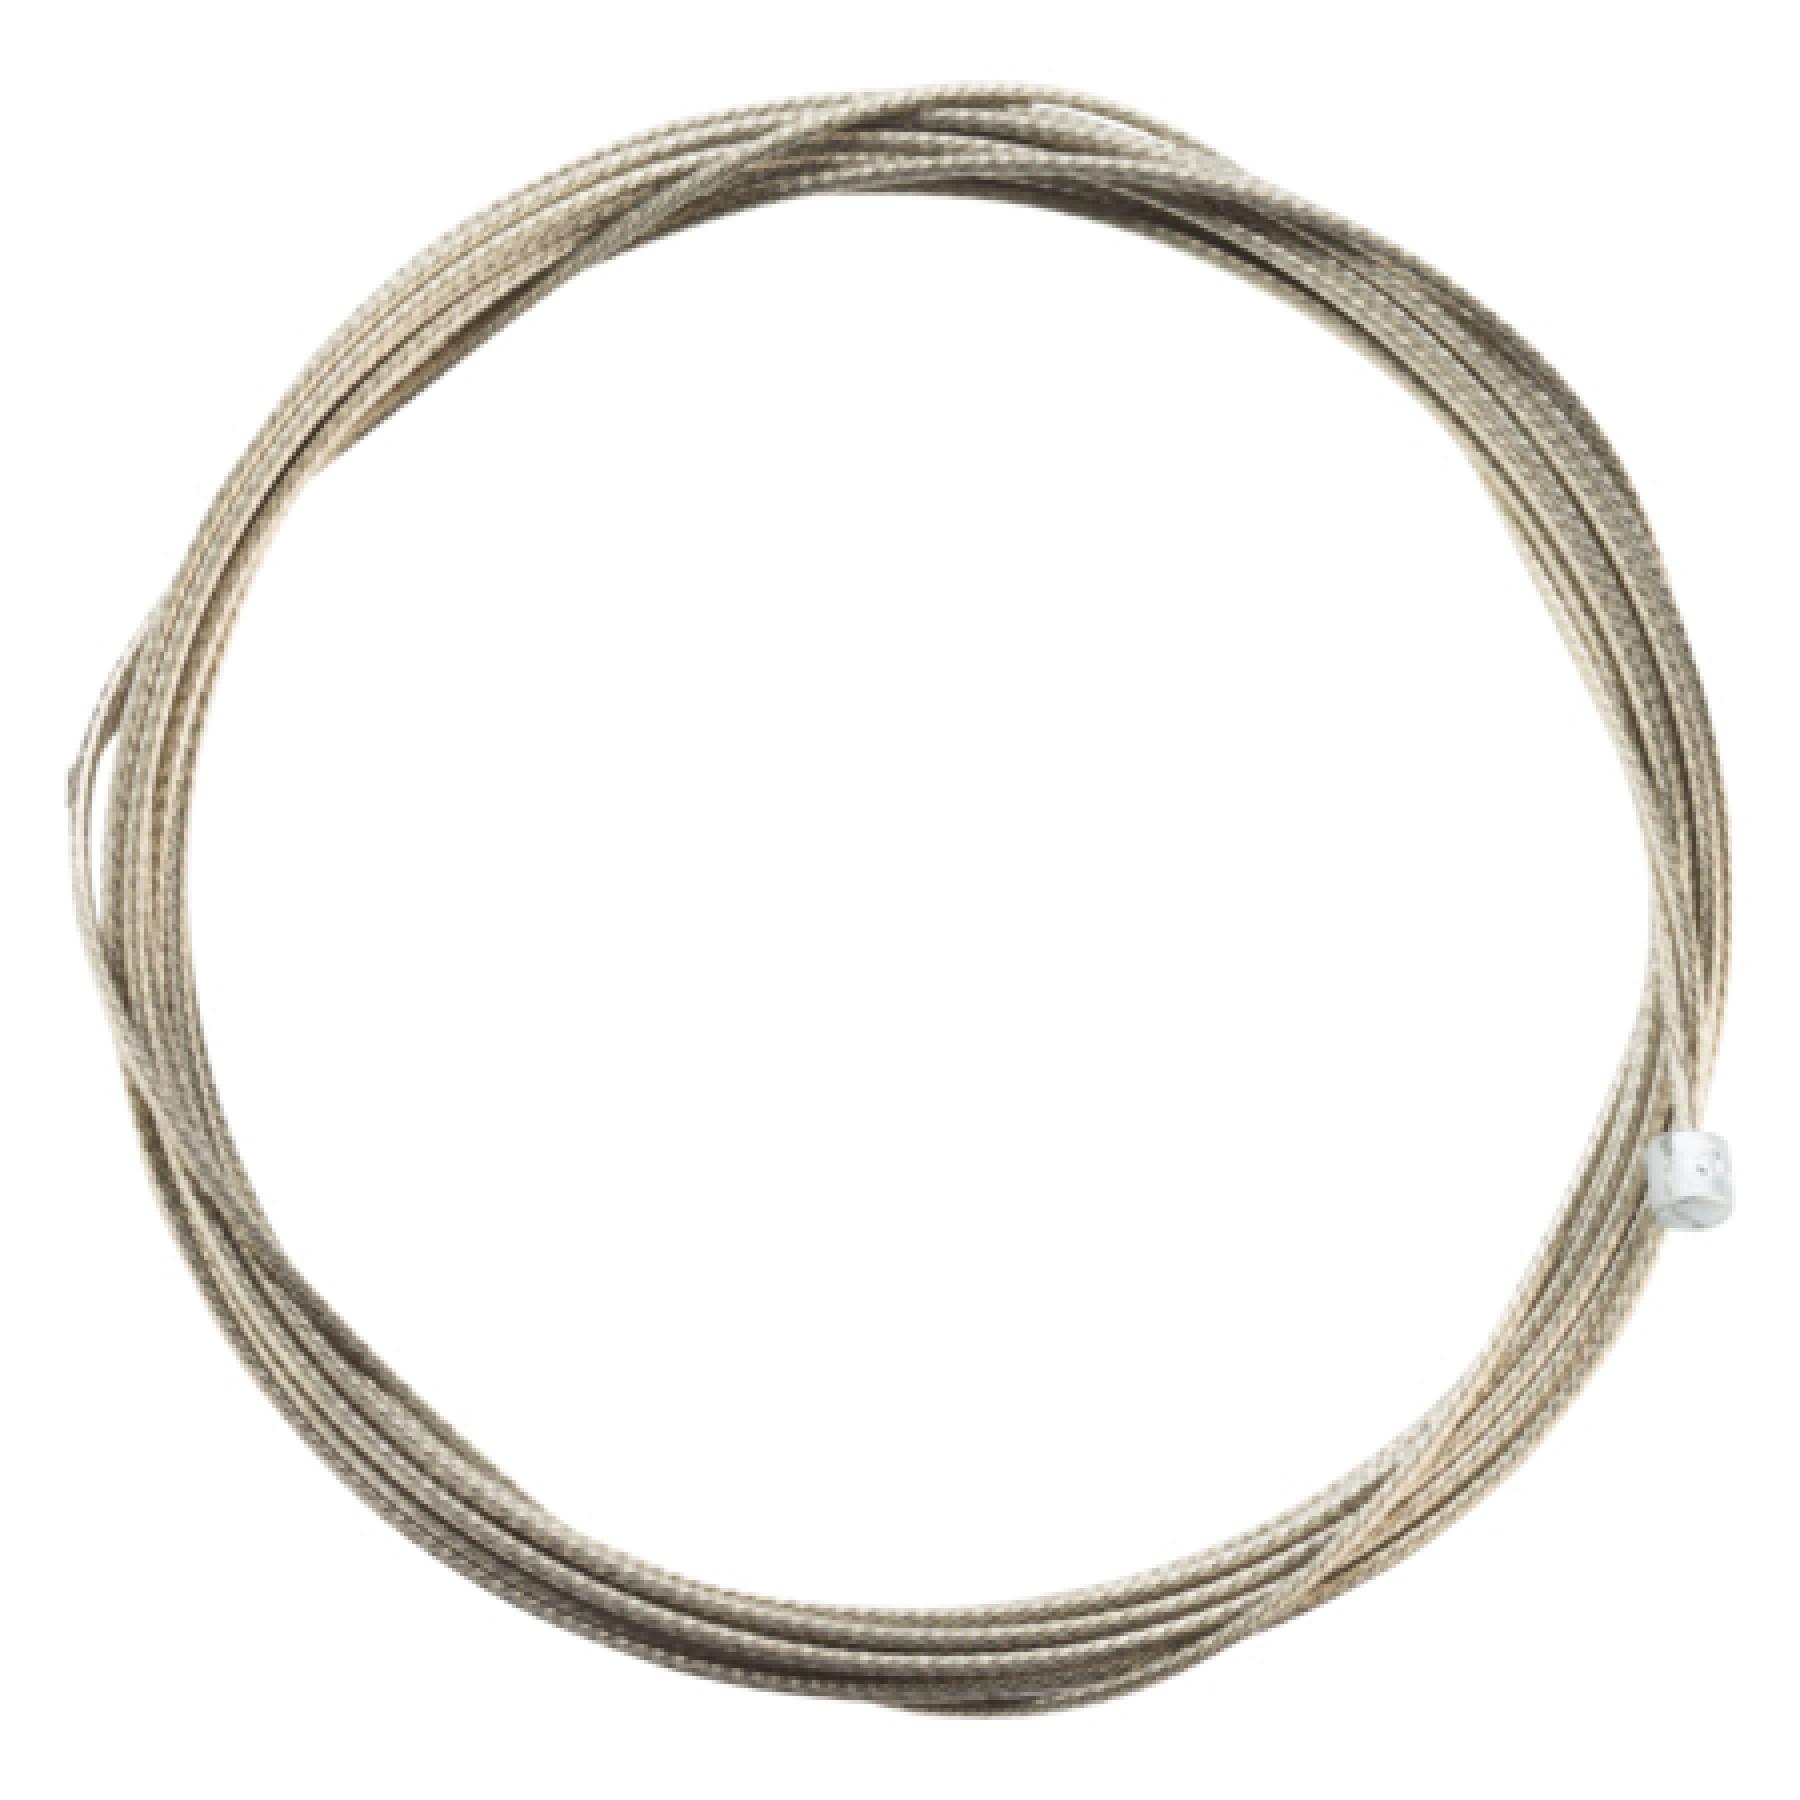 Kabel för spårväxel Jagwire Pro 1.1X3100mm SRAM/Shimano